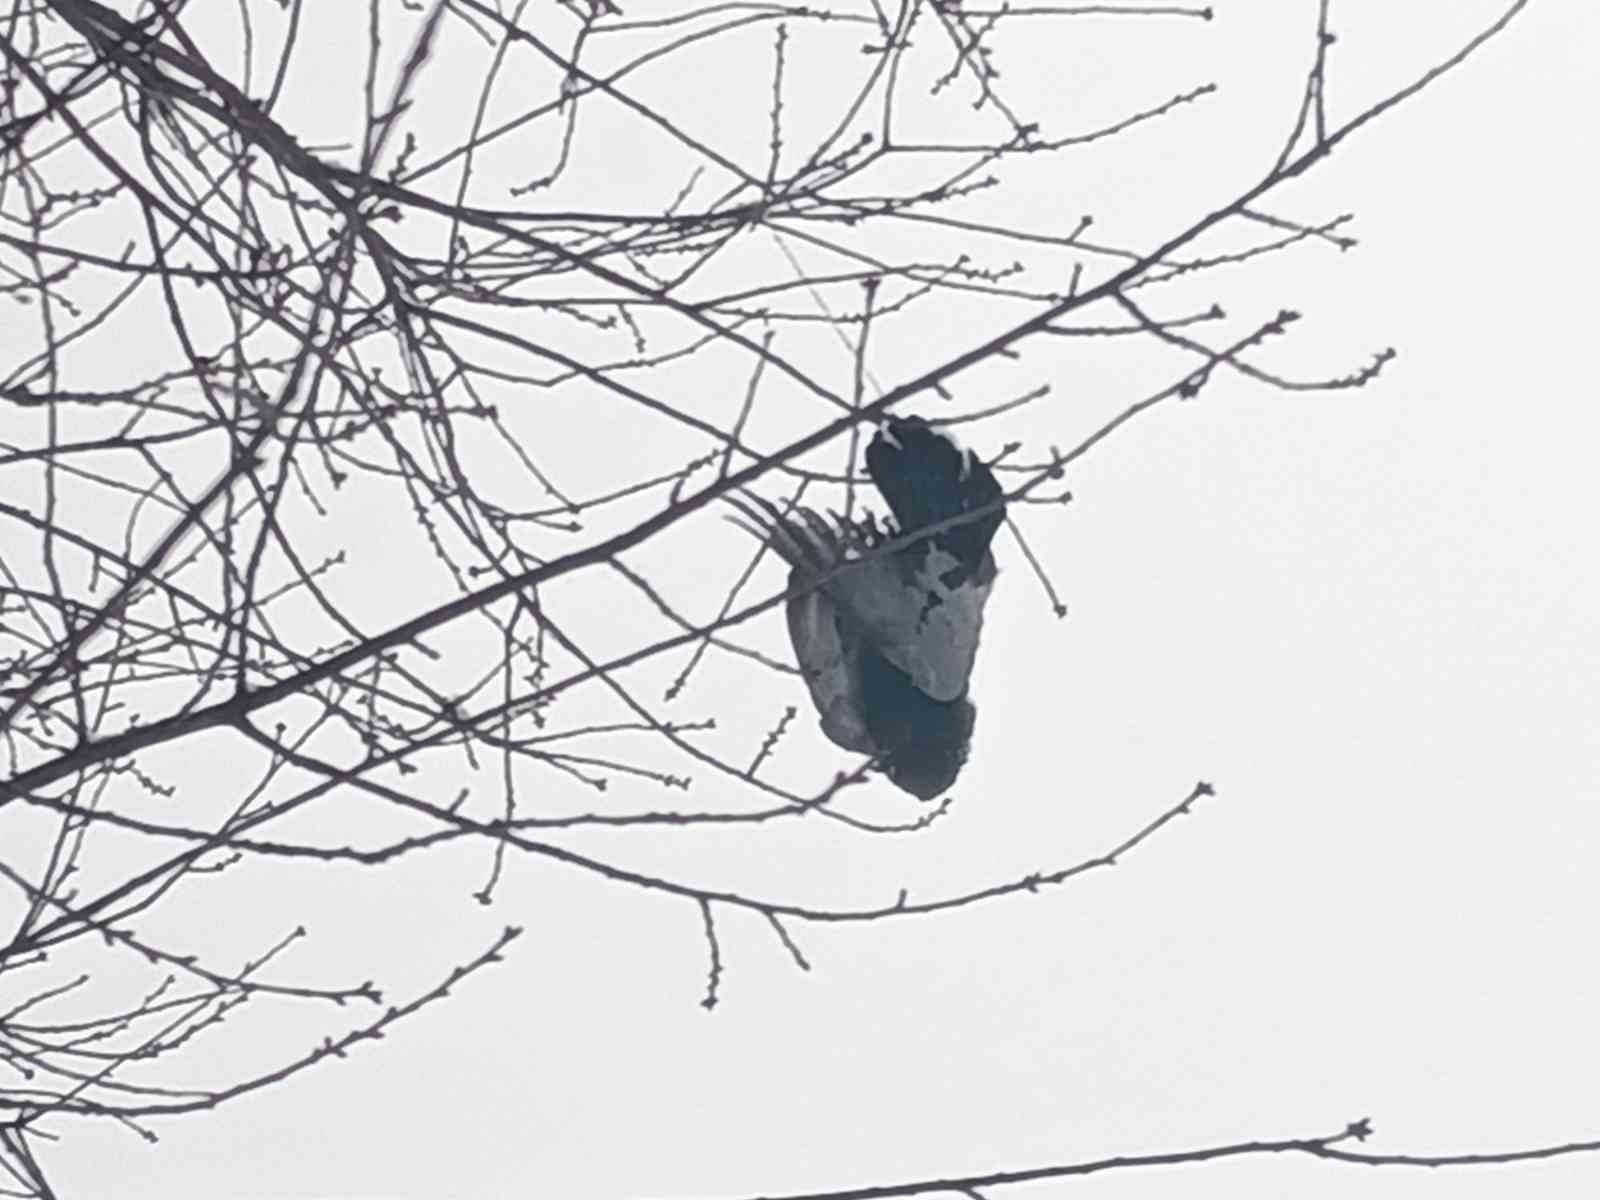 Ağaçta donan kuş asılı kaldı